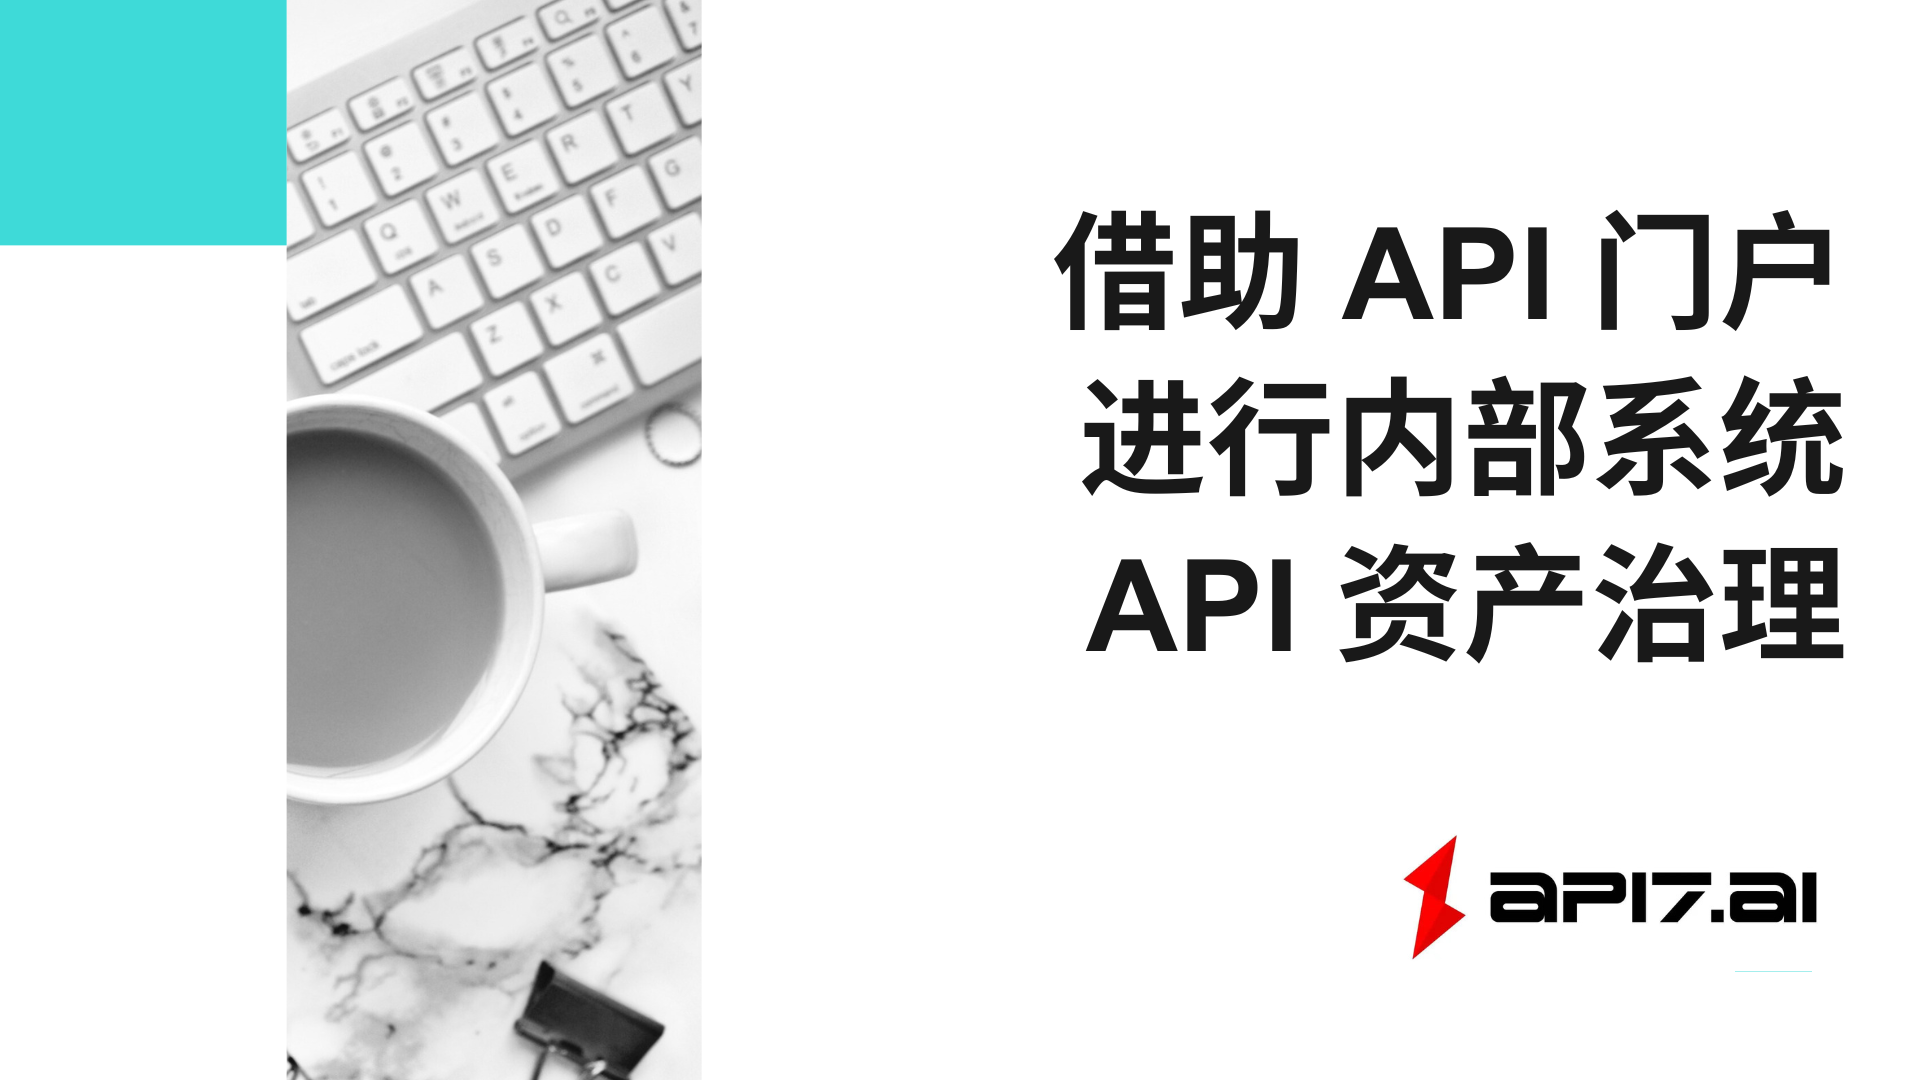 借助 API 门户进行内部系统 API 资产治理